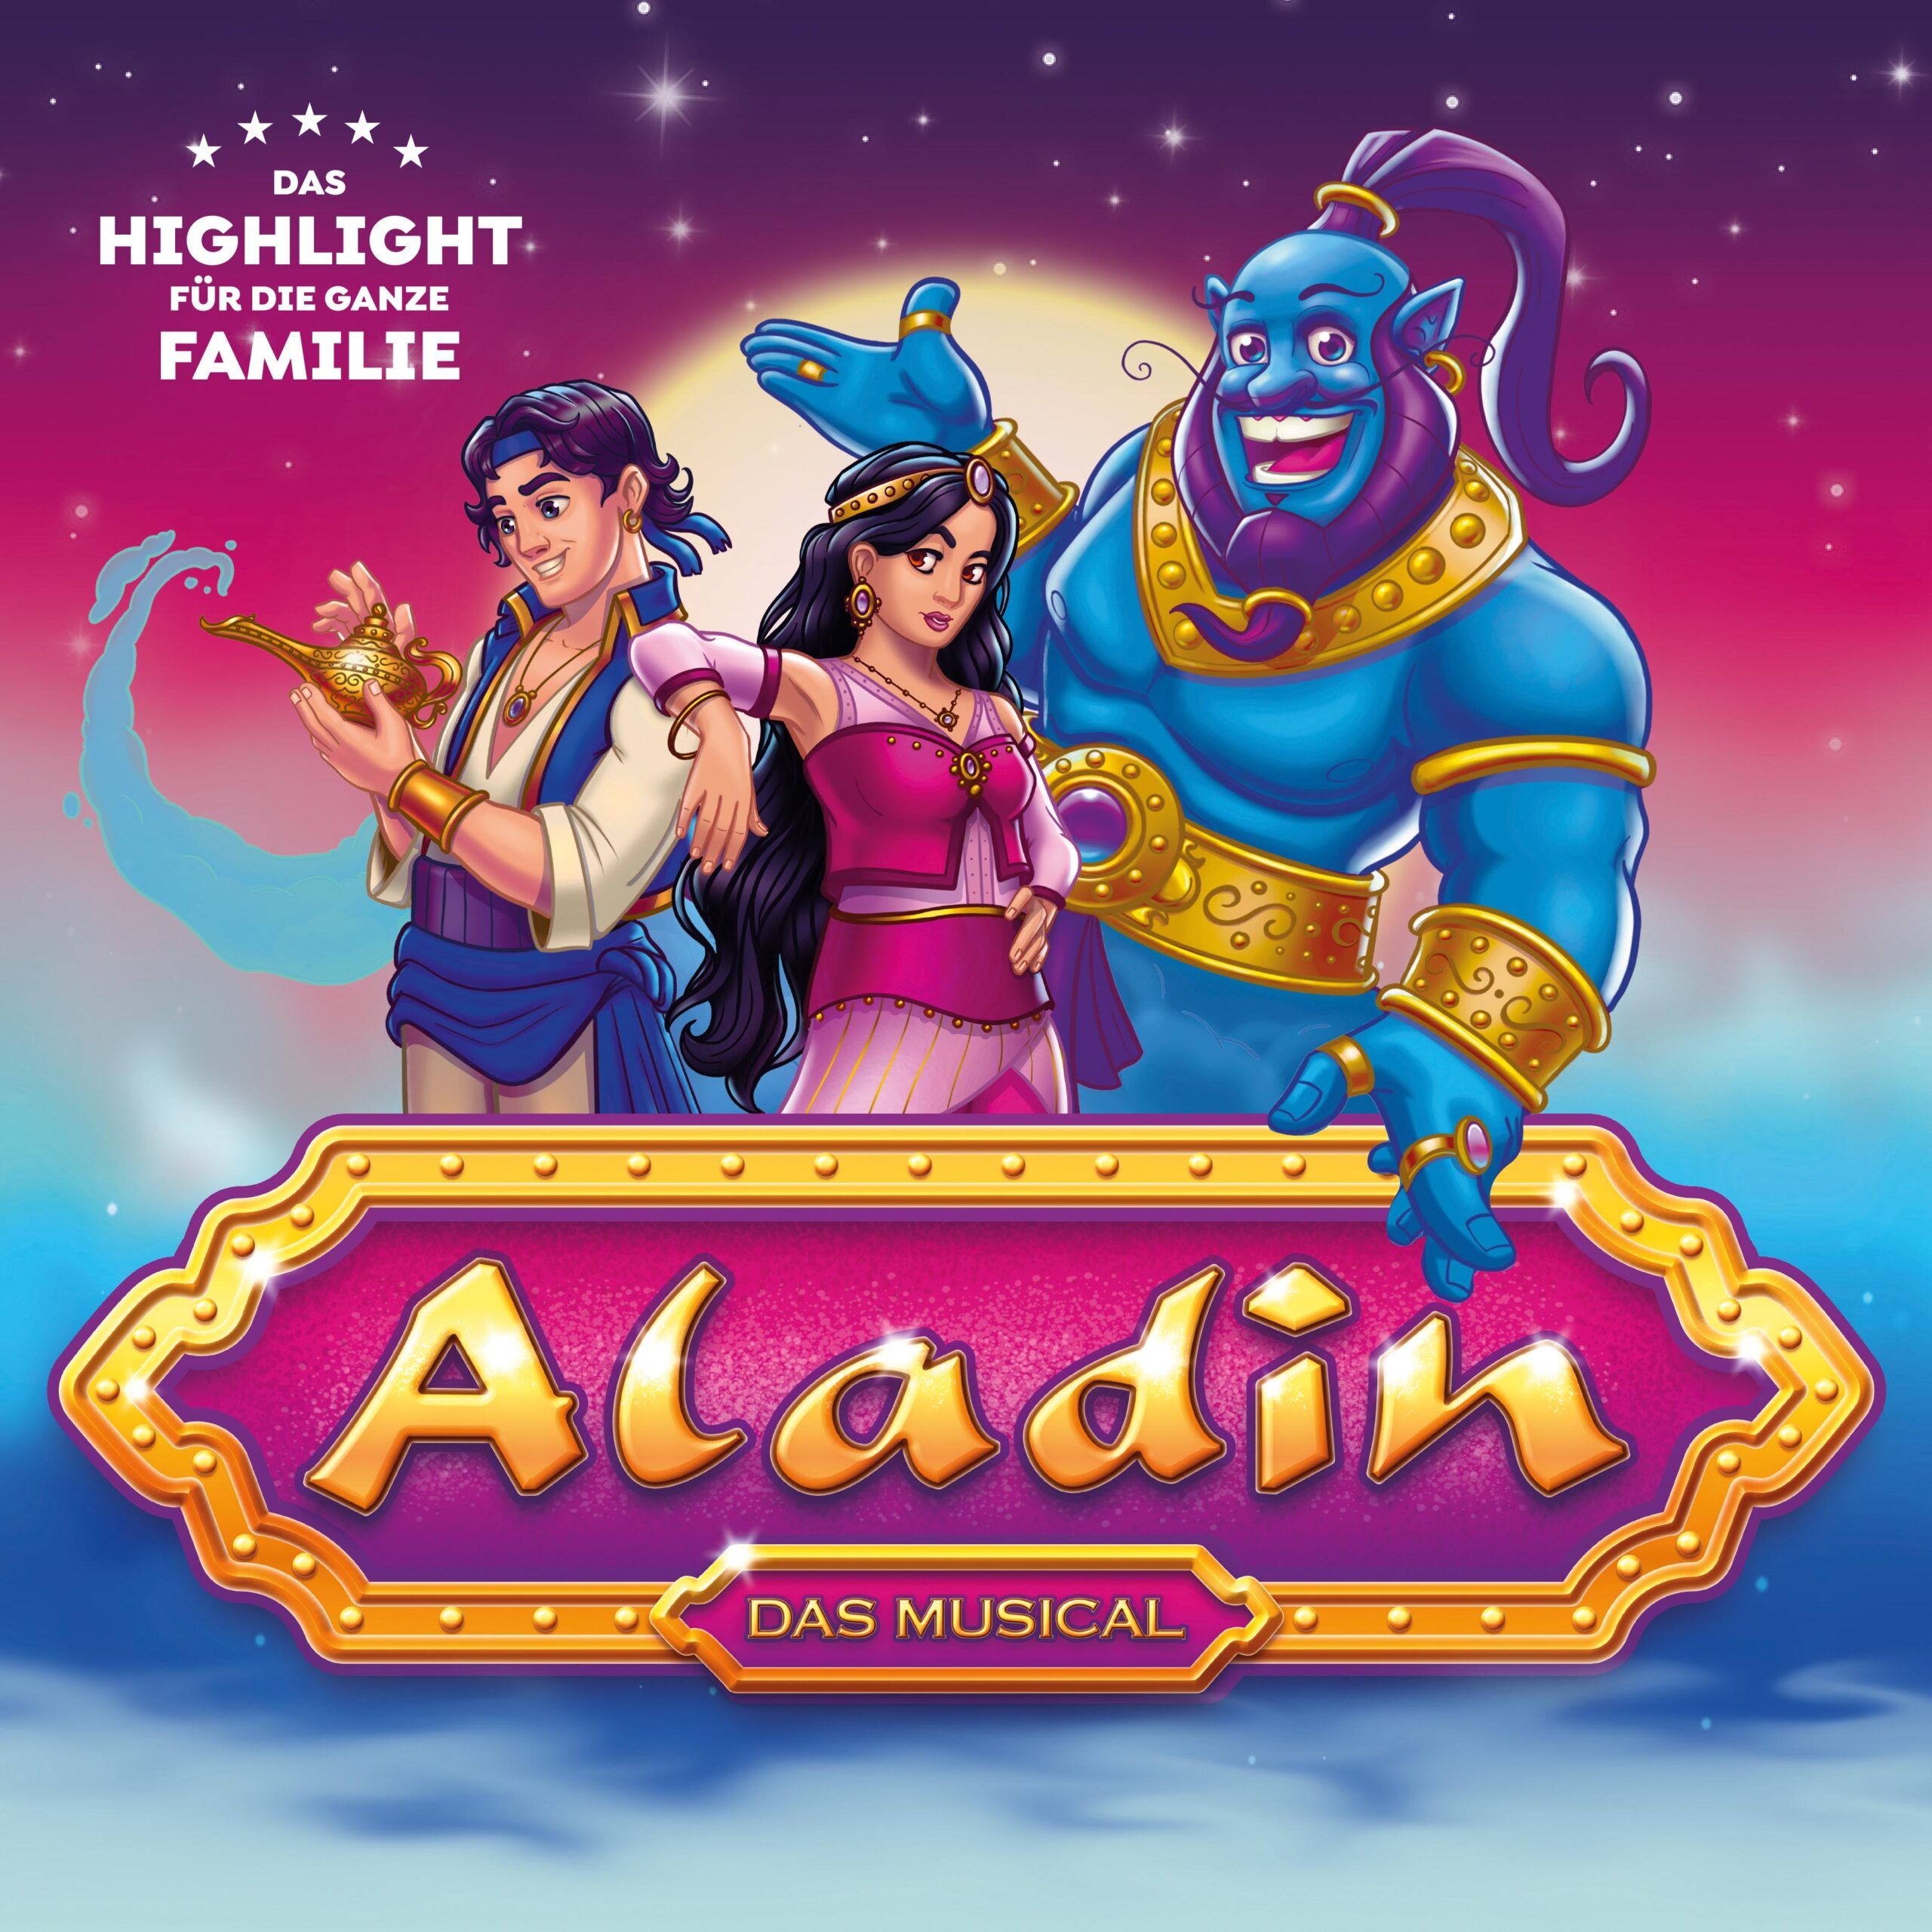 Aladin – das Musical am 22.1.2022 in Schwerin!